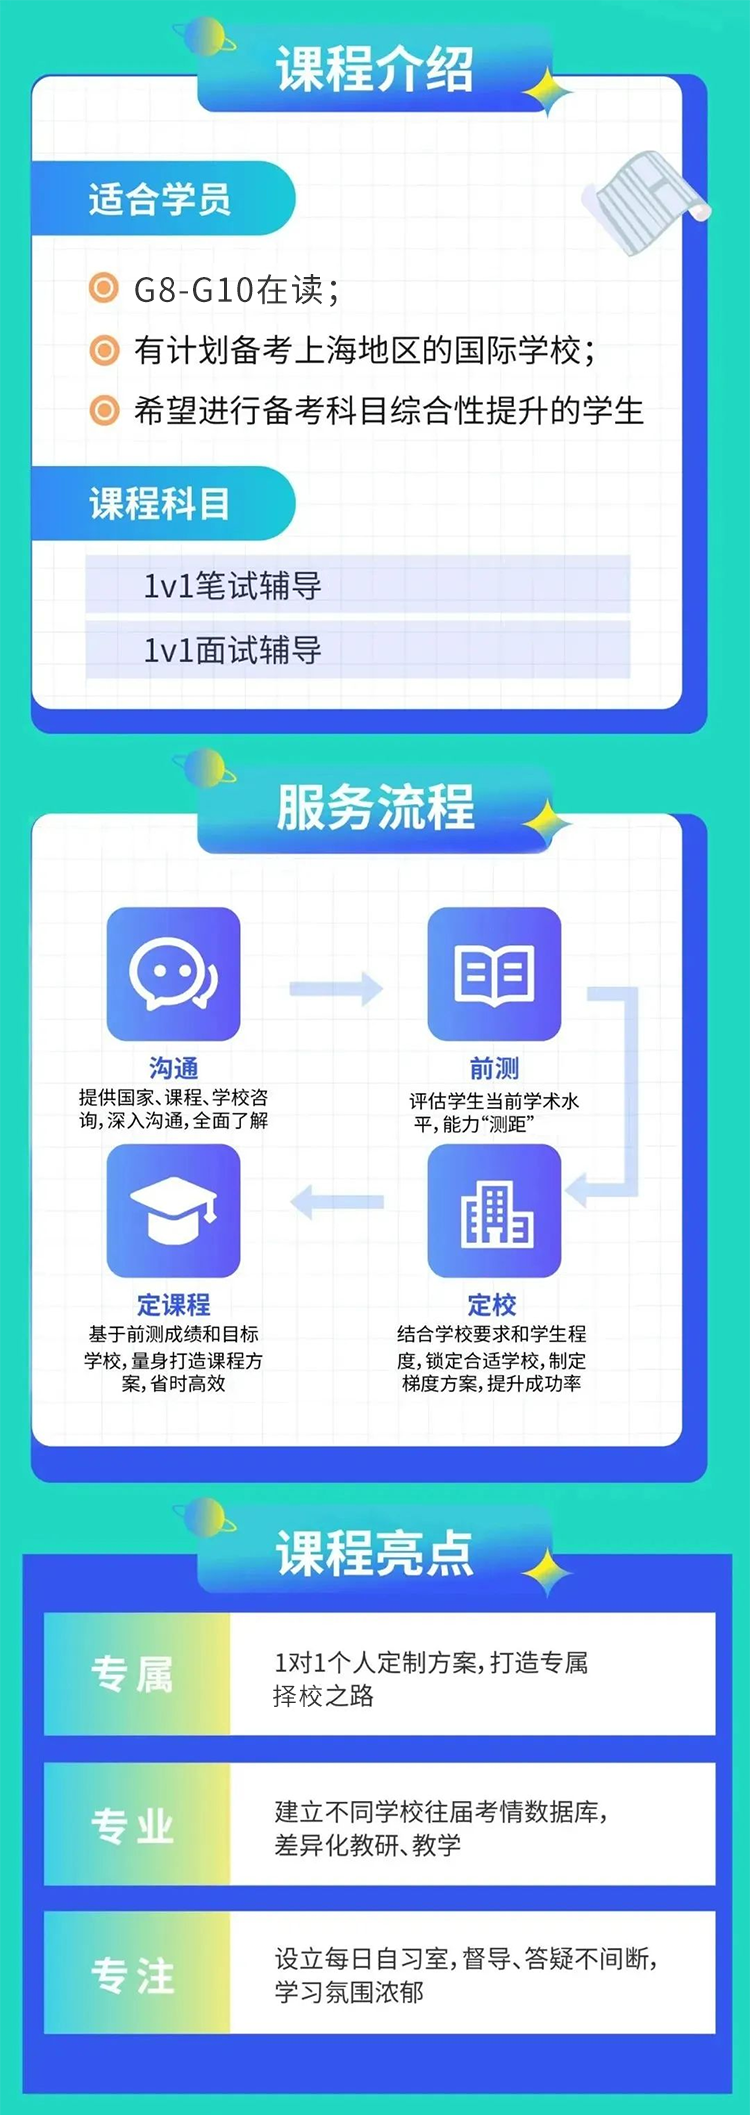 领科国际学校上海校区秋招安排,不要错过考试信息内容图片_3